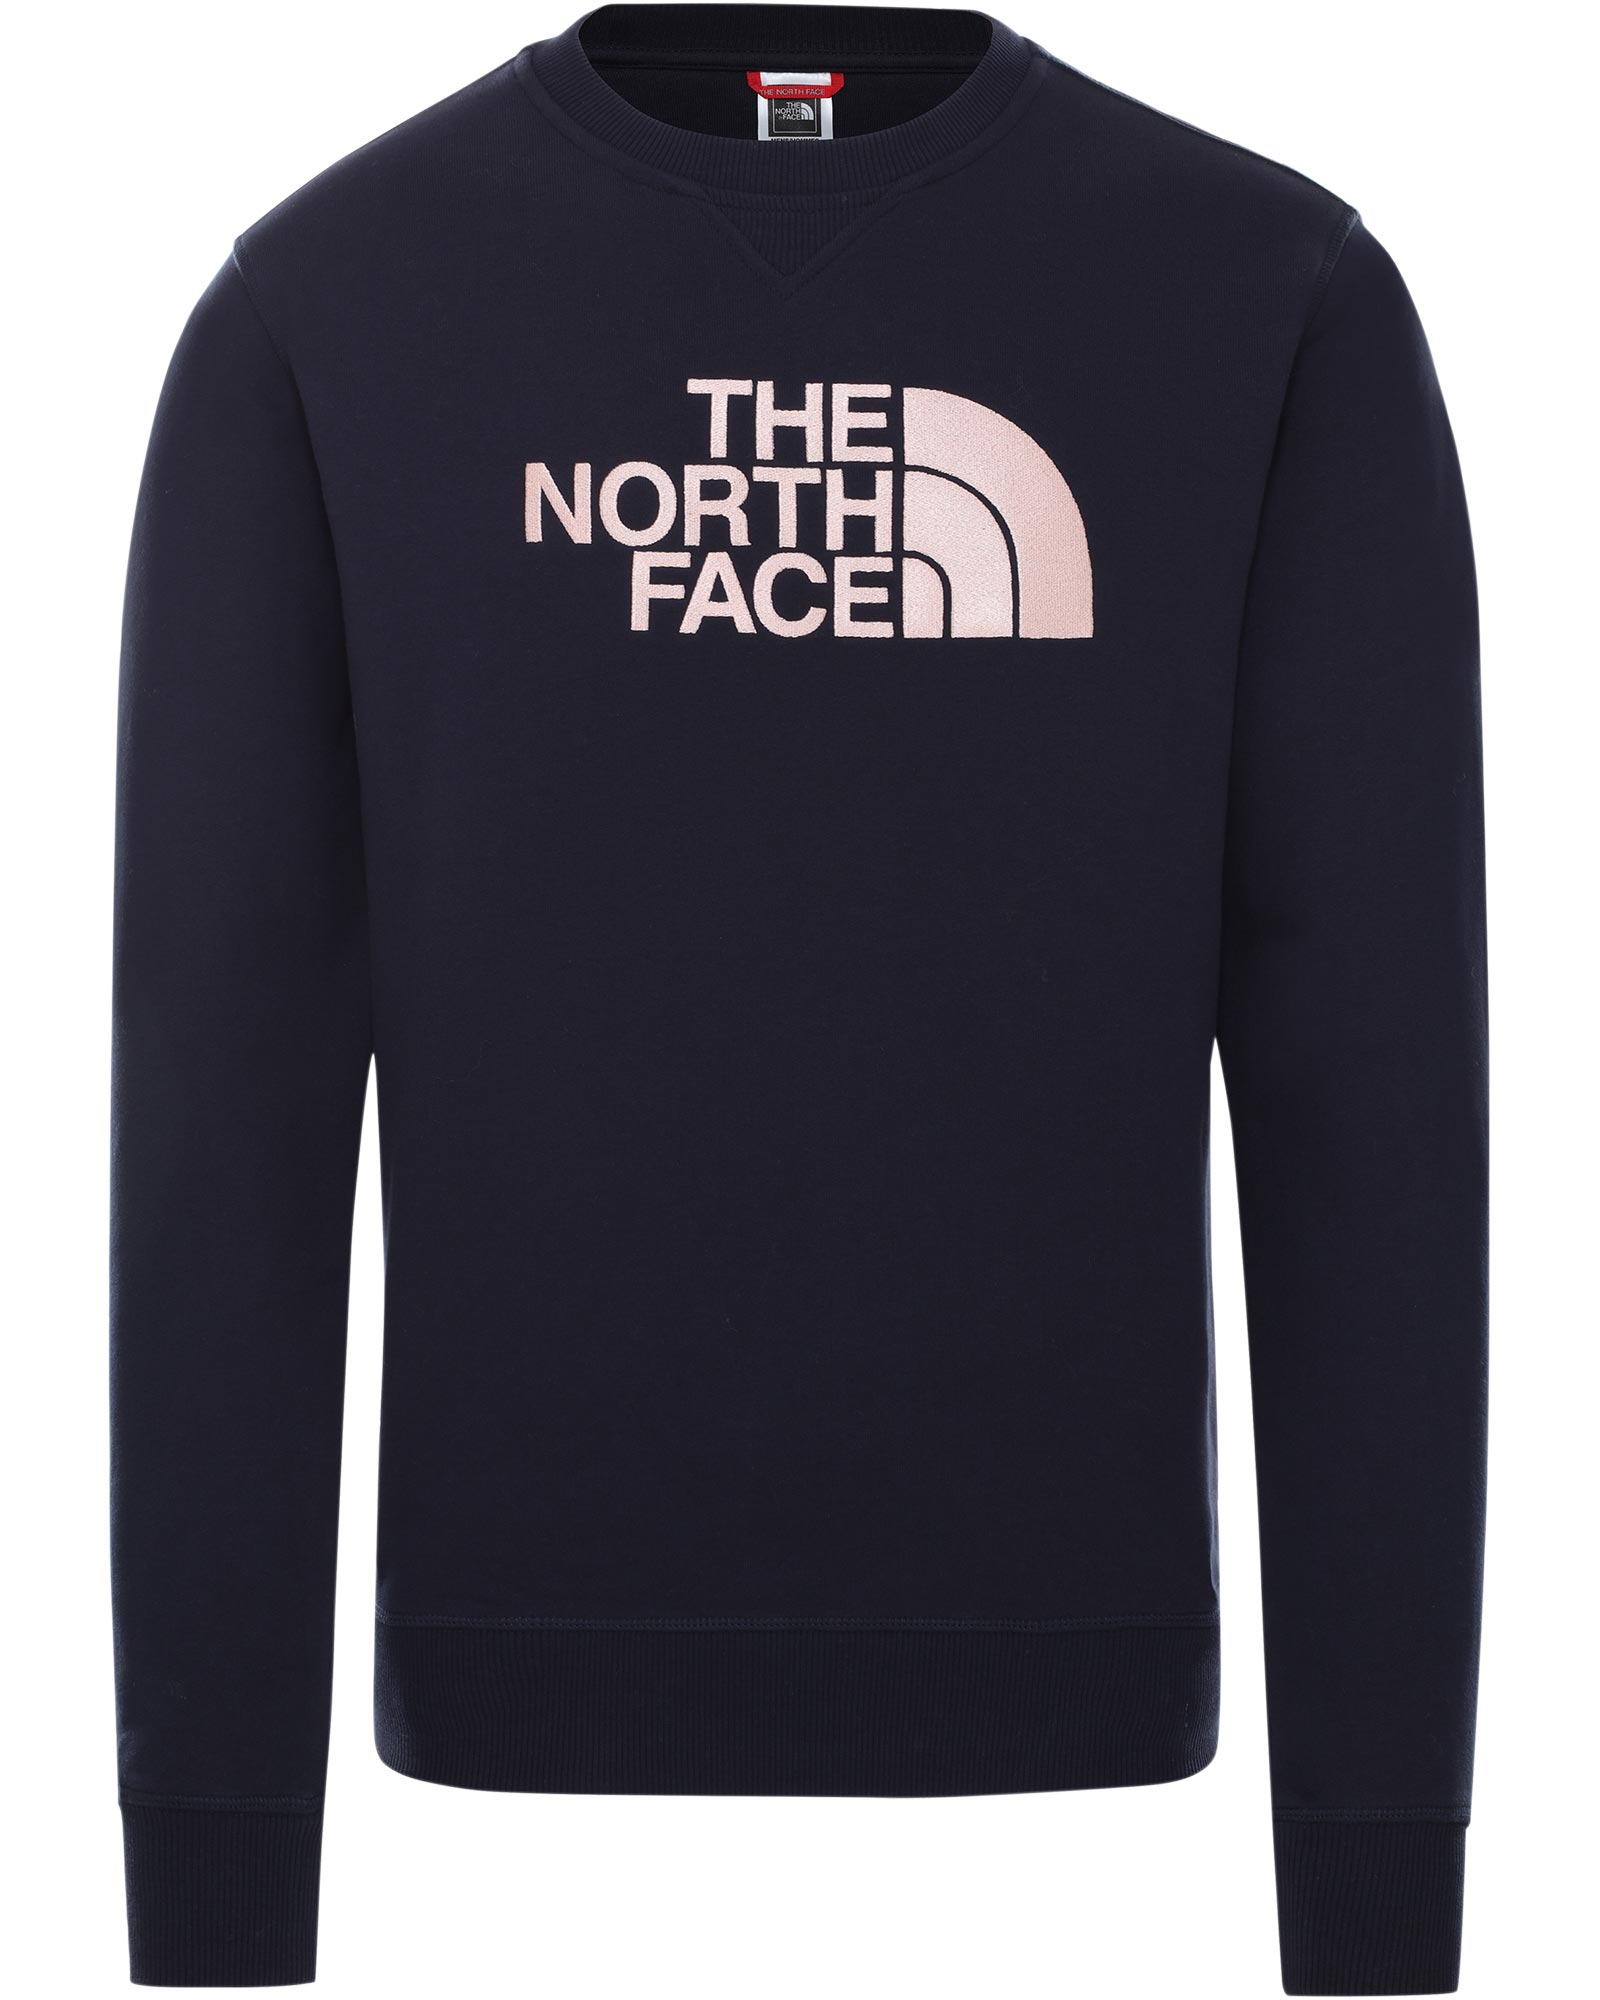 Product image of The North Face Drew Peak Men's Crew